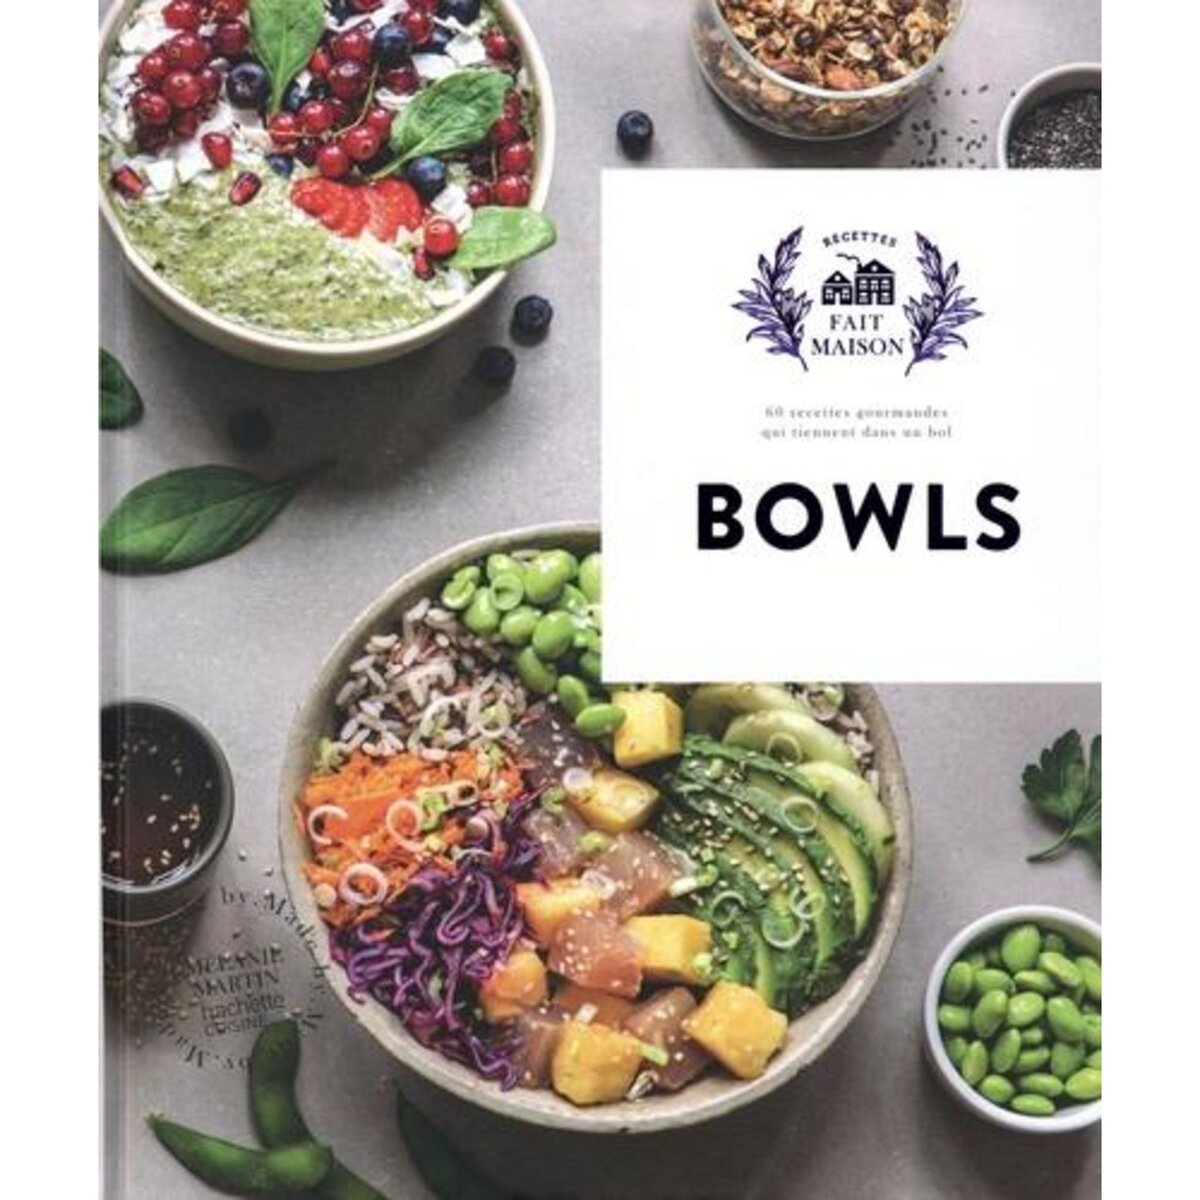 livres - Recette internaute - Marie Claire Suisse - Mars 24 - Bowls Coup de Food : Recette de l’internaute